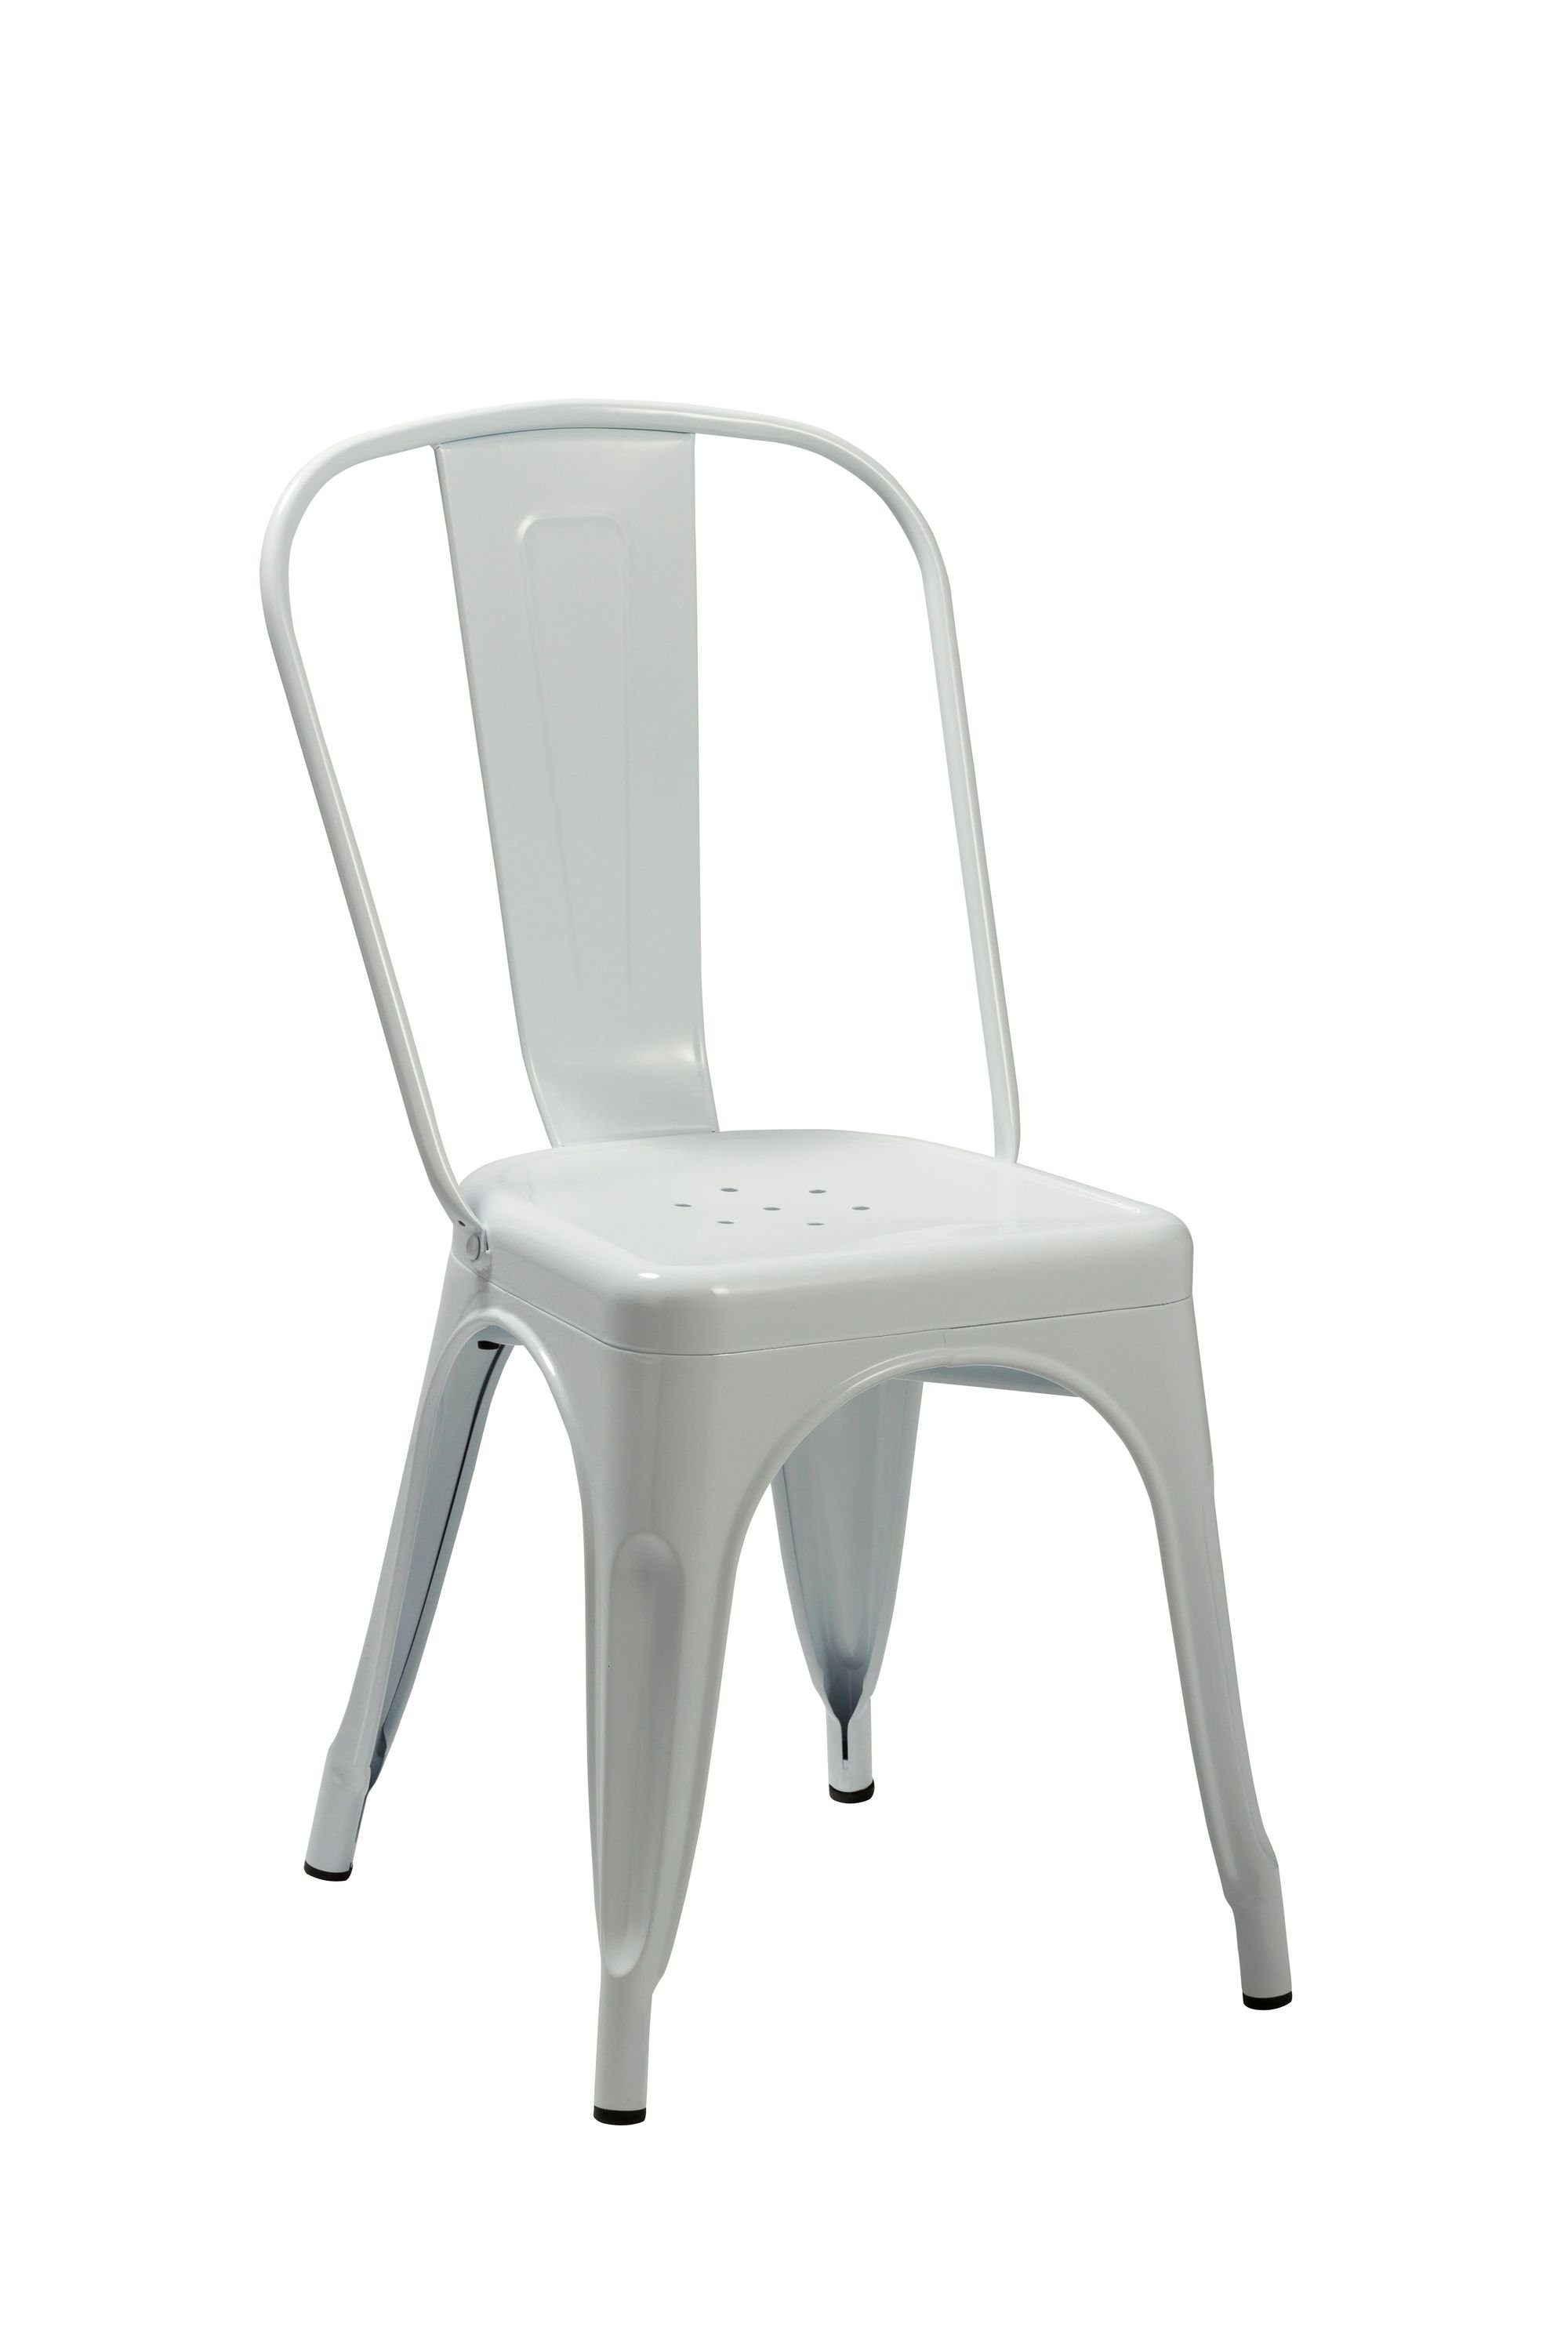 Duhome Esszimmerstuhl, Küchenstuhl Stuhl Esszimmerstuhl aus METALL Sitzfläche aus Holz stapelbar Weiß